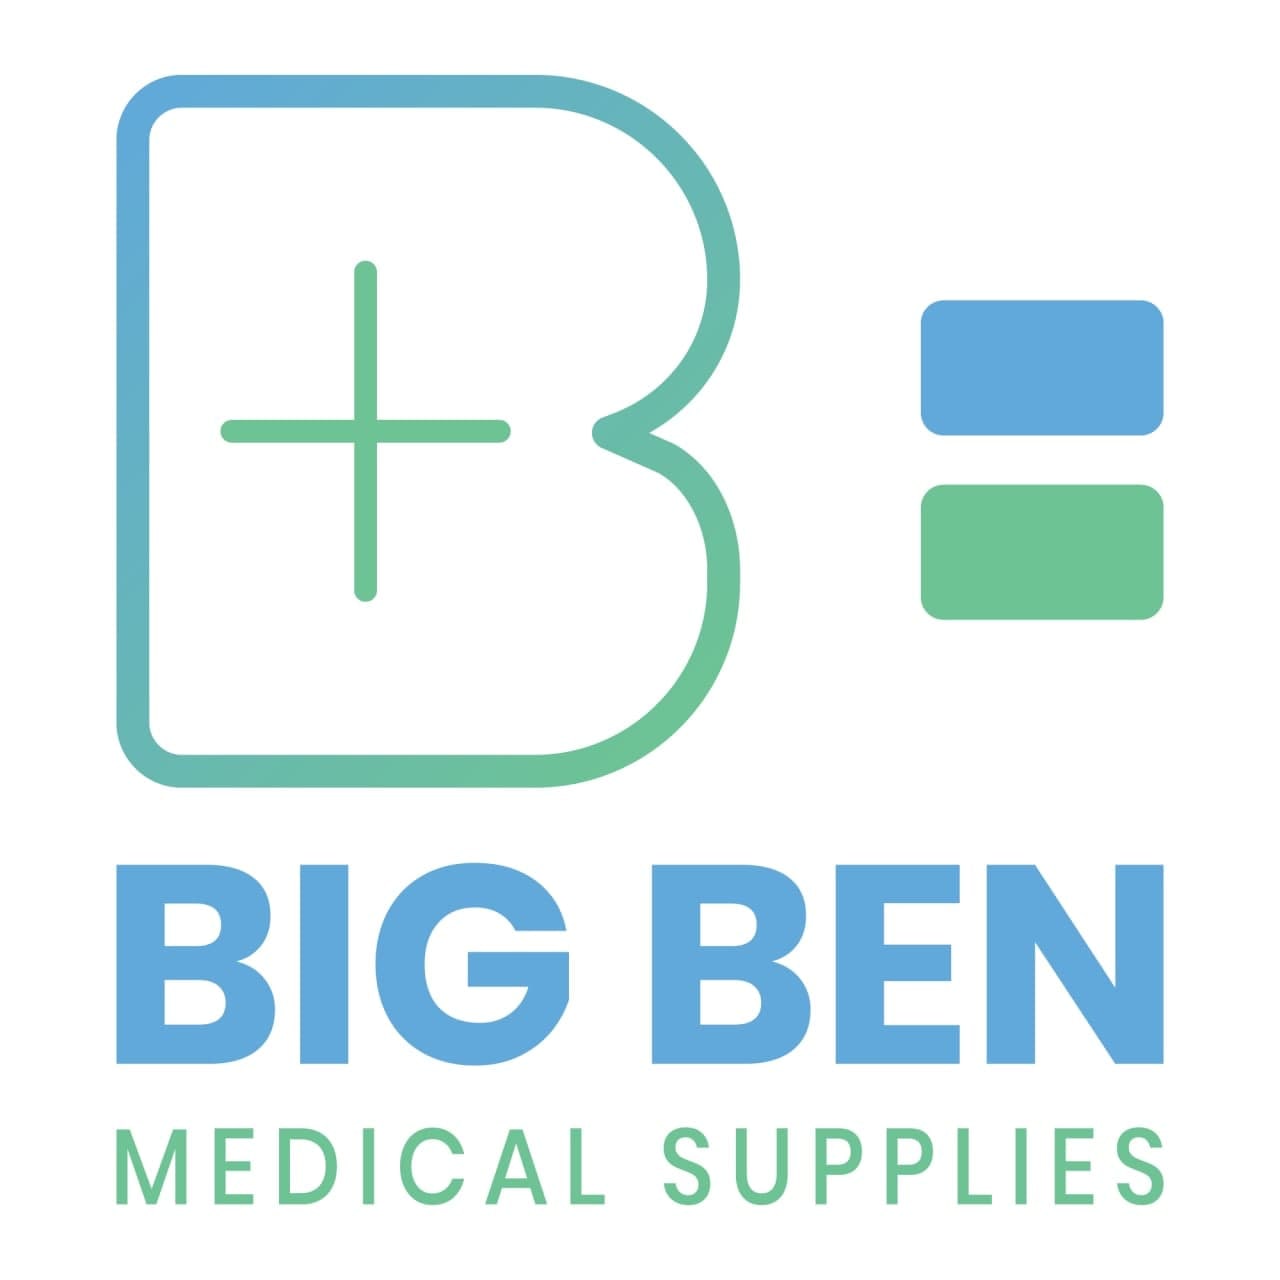 Bigben Medical Supplies